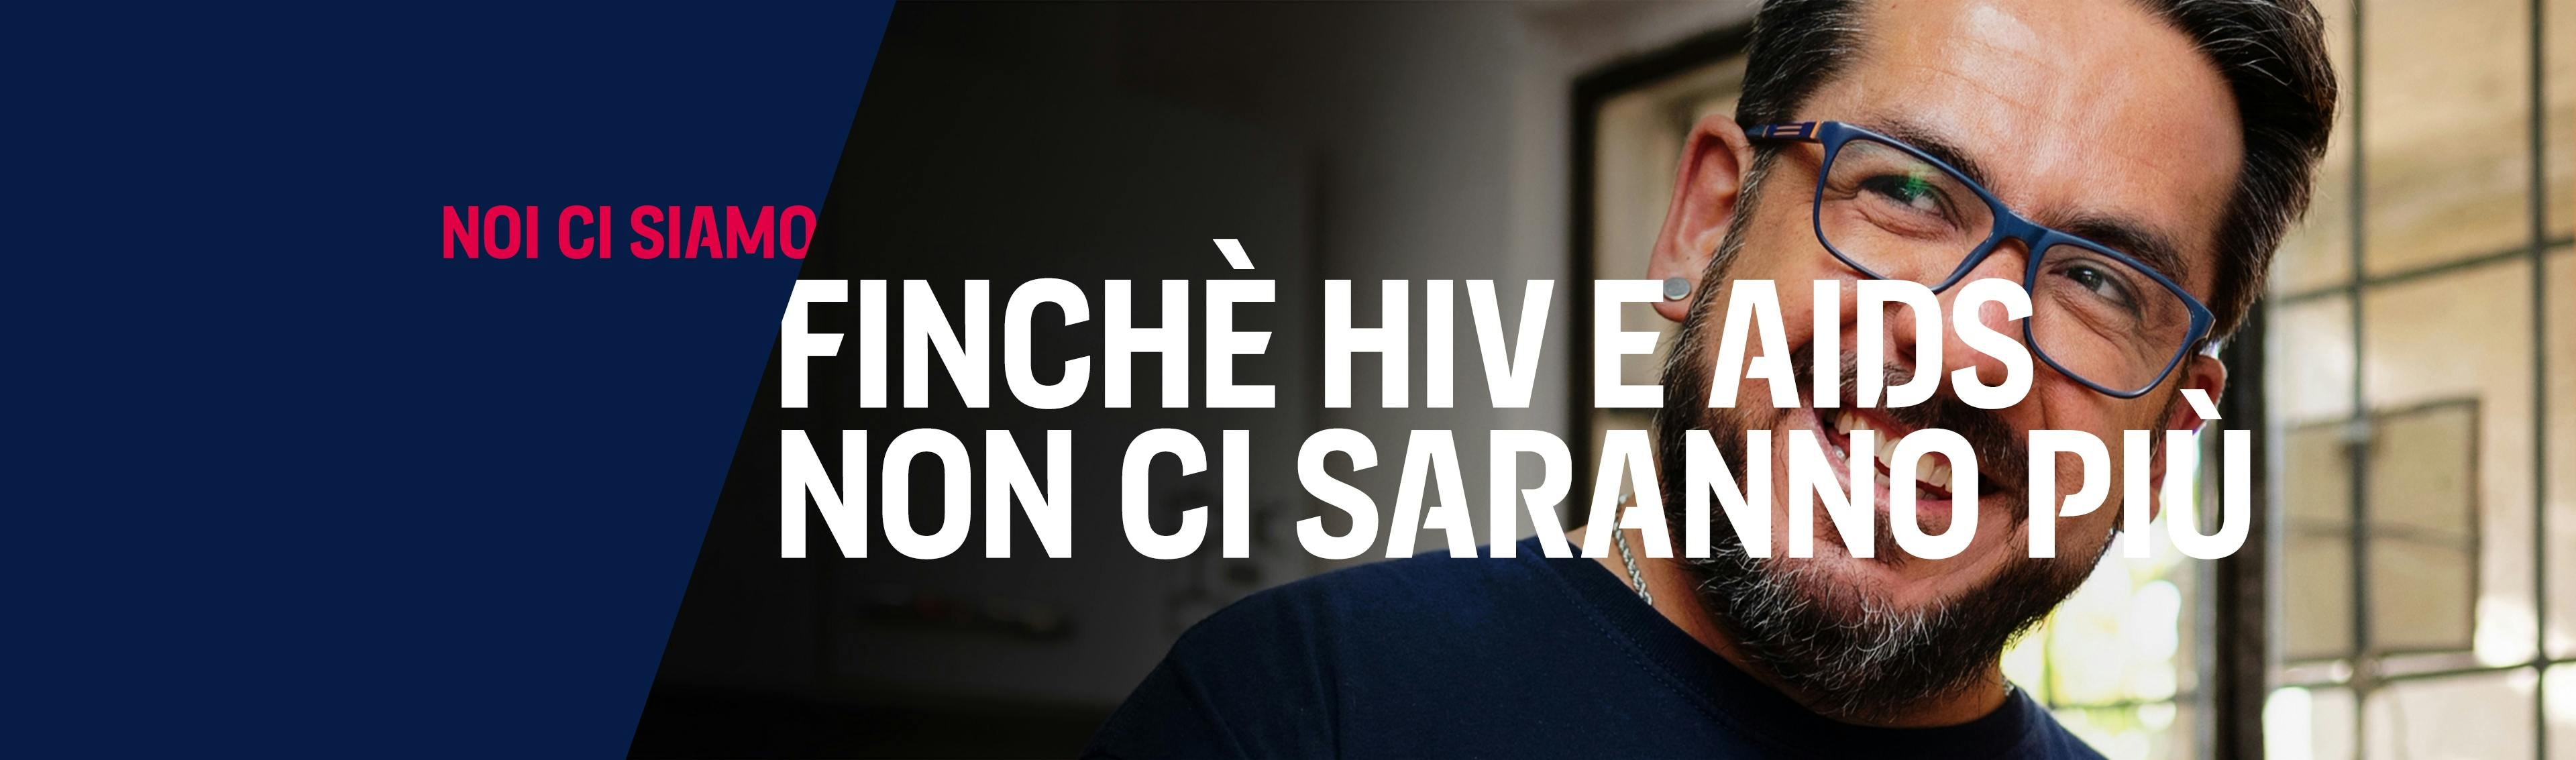 Uomo dell’Uruguay che vive con HIV sorride e guarda l’orizzonte